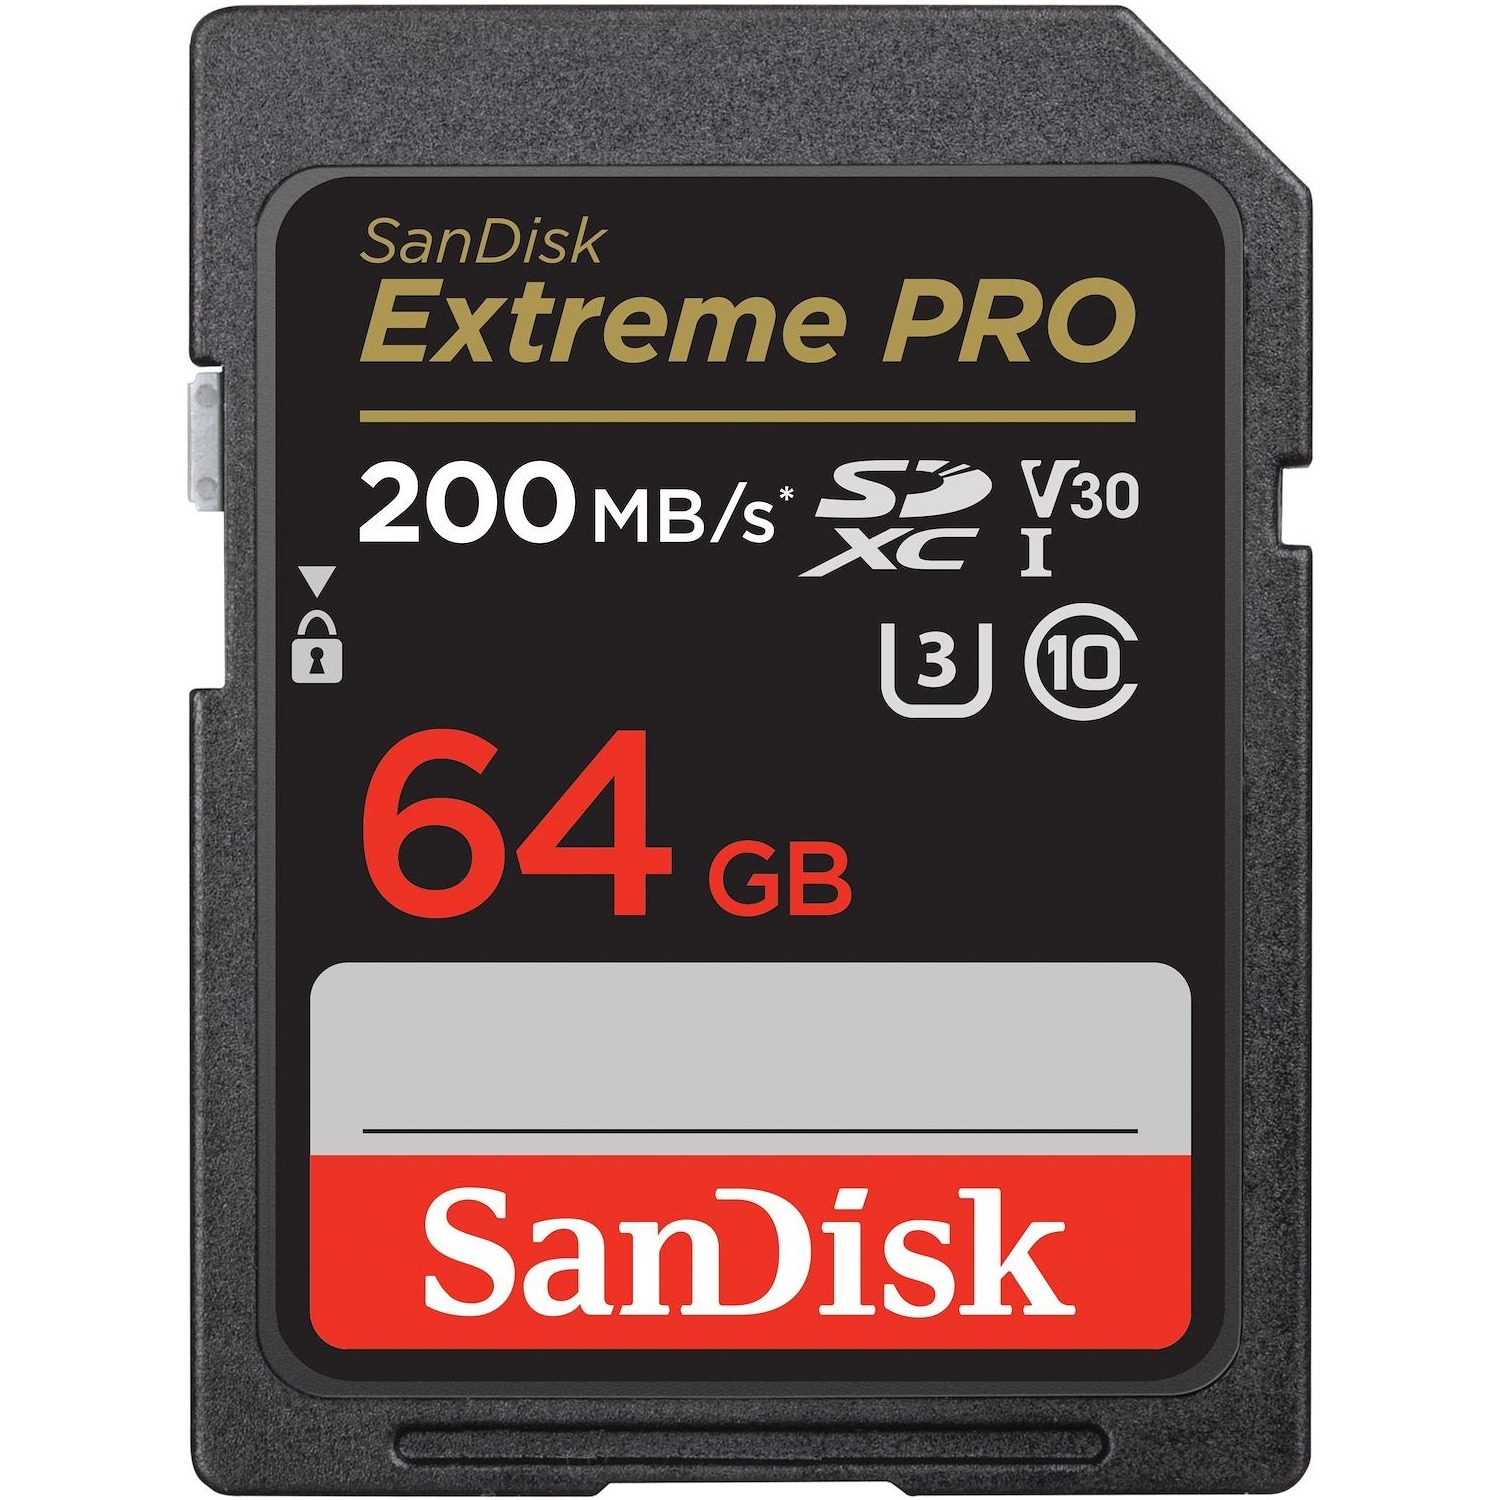 Immagine per SD San Disk 64GB Extreme Pro XC da DIMOStore